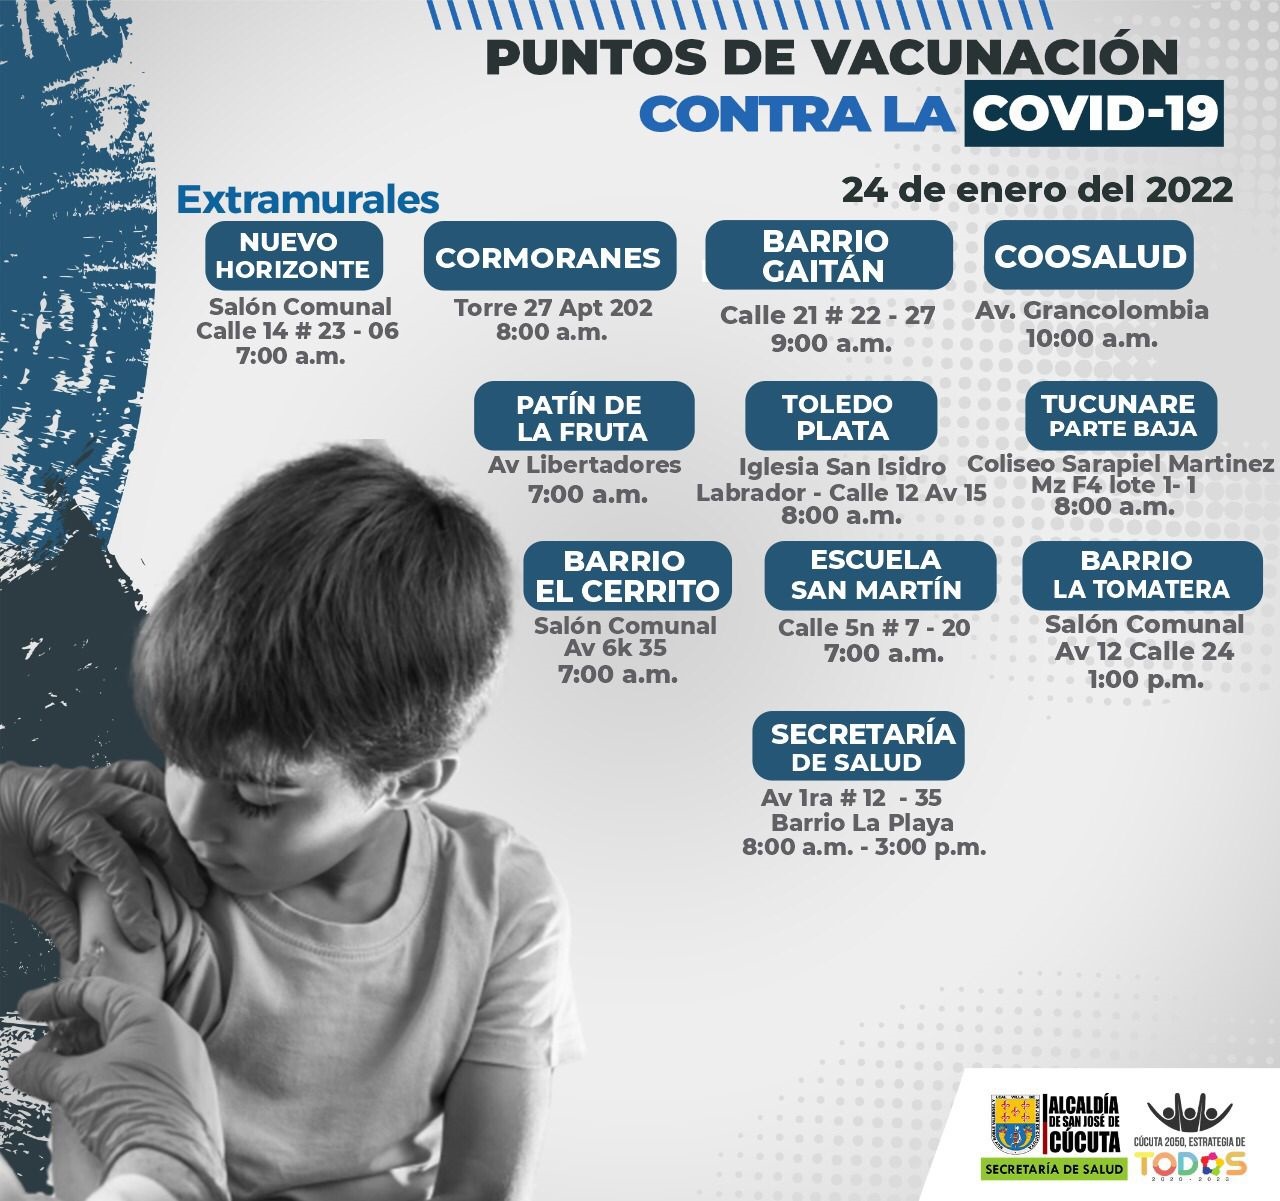 Puntos de vacunación contra la COVID-19 en Cúcuta./Foto: cortesía